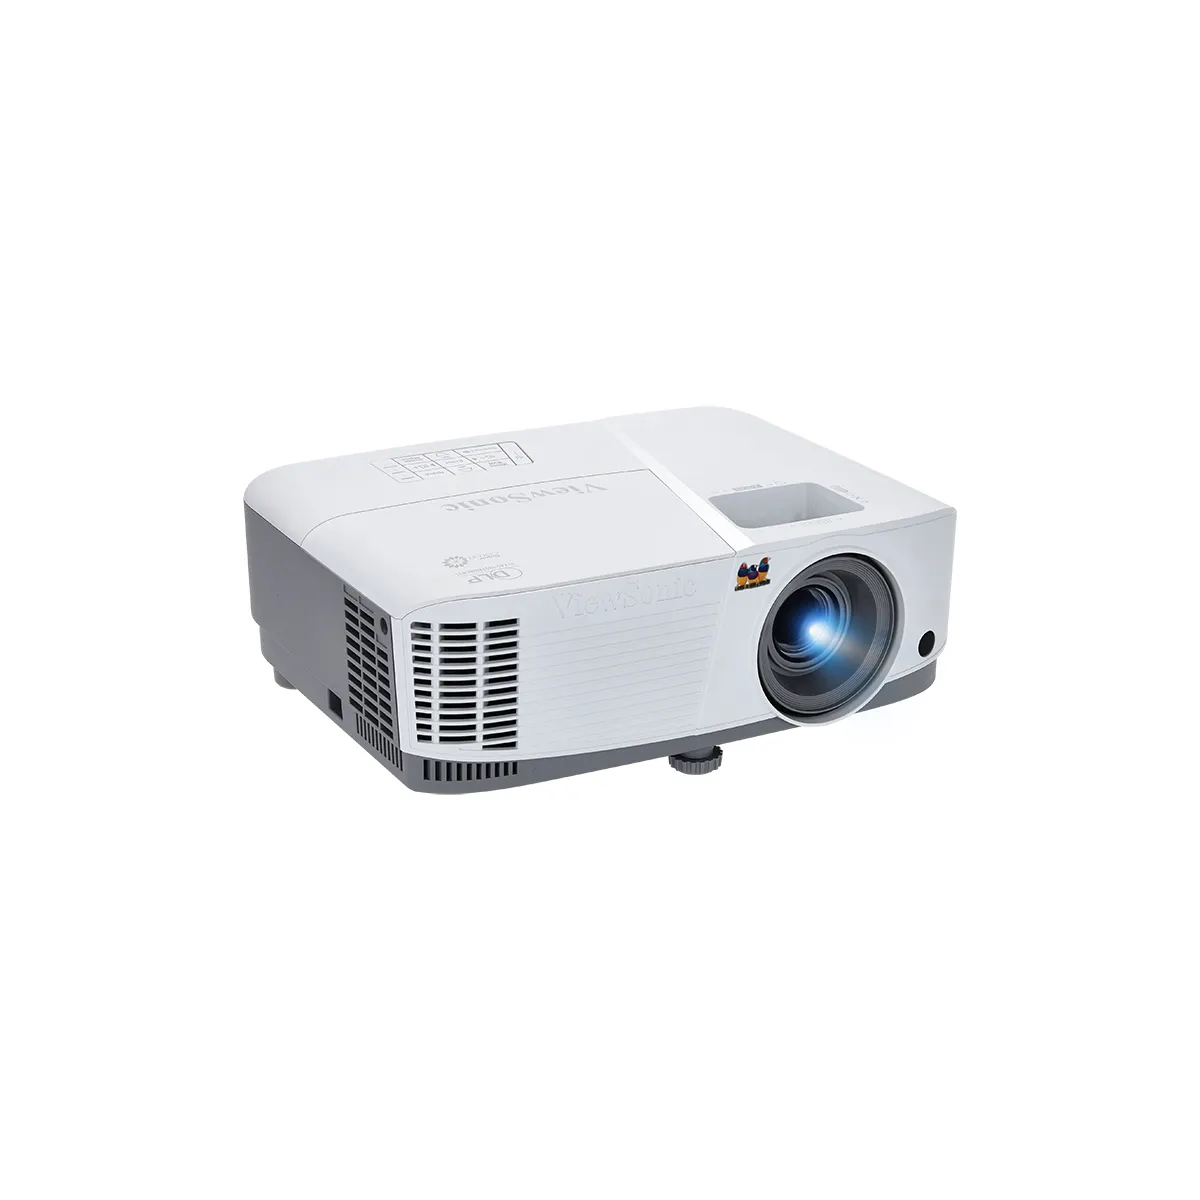 Dlp Projector Xga Viewsonic Pa503xe Bedrijfseducatie 4000 Lumen Projector